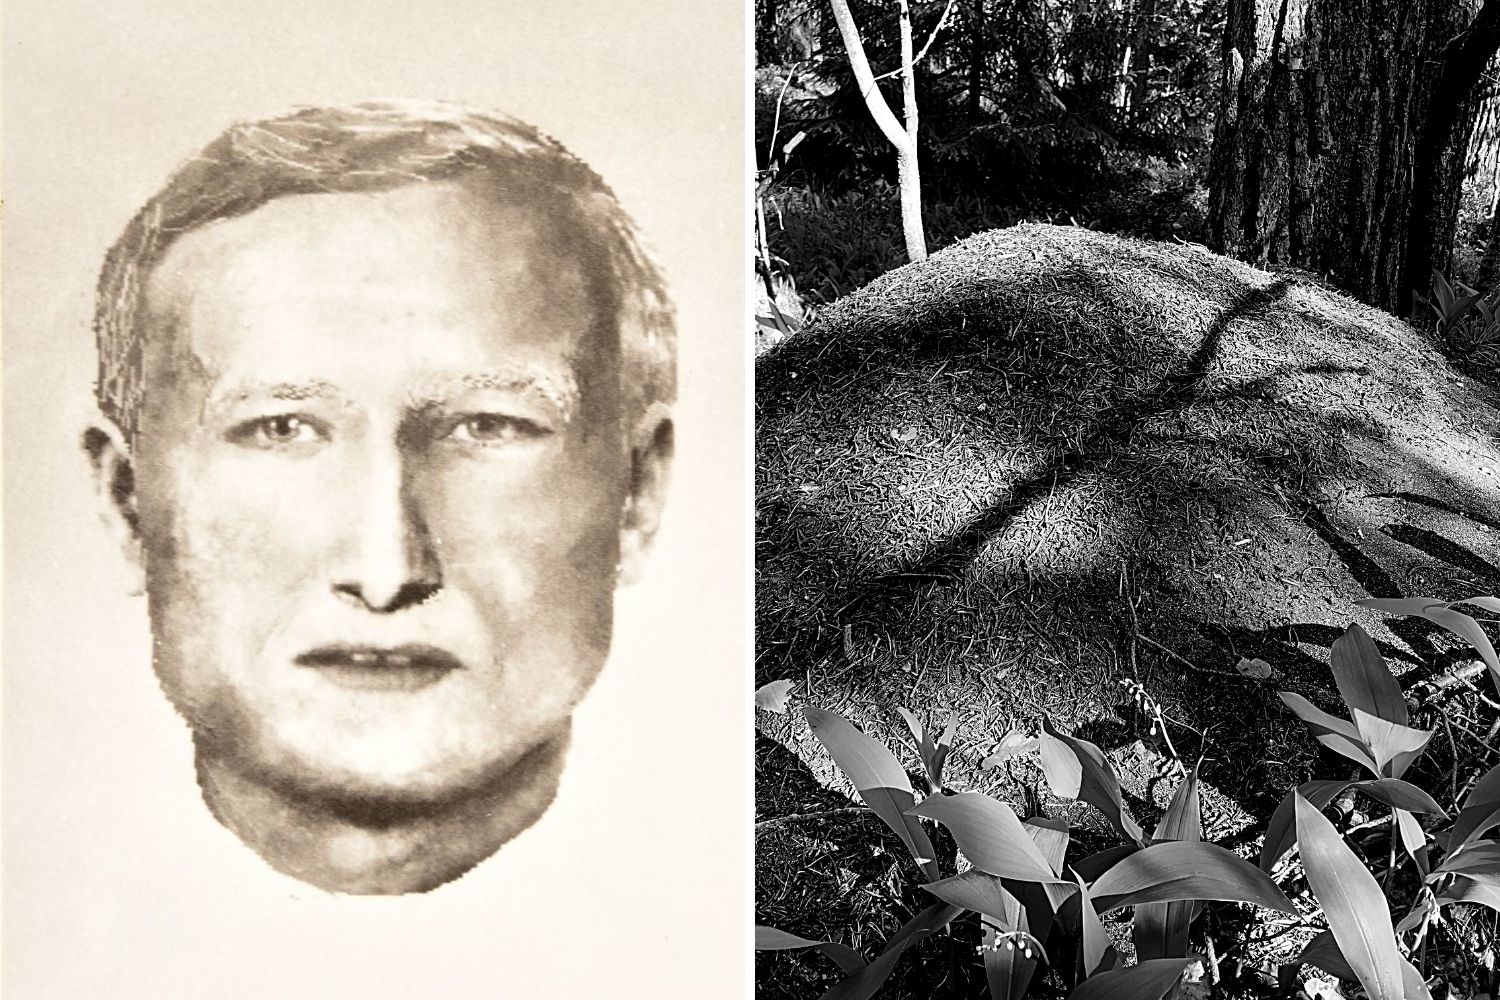 Od szokującego odkrycia pod Łodzią minęło 18 lat. Wciąż nie wiadomo, kim był zamordowany mężczyzna - Zdjęcie główne